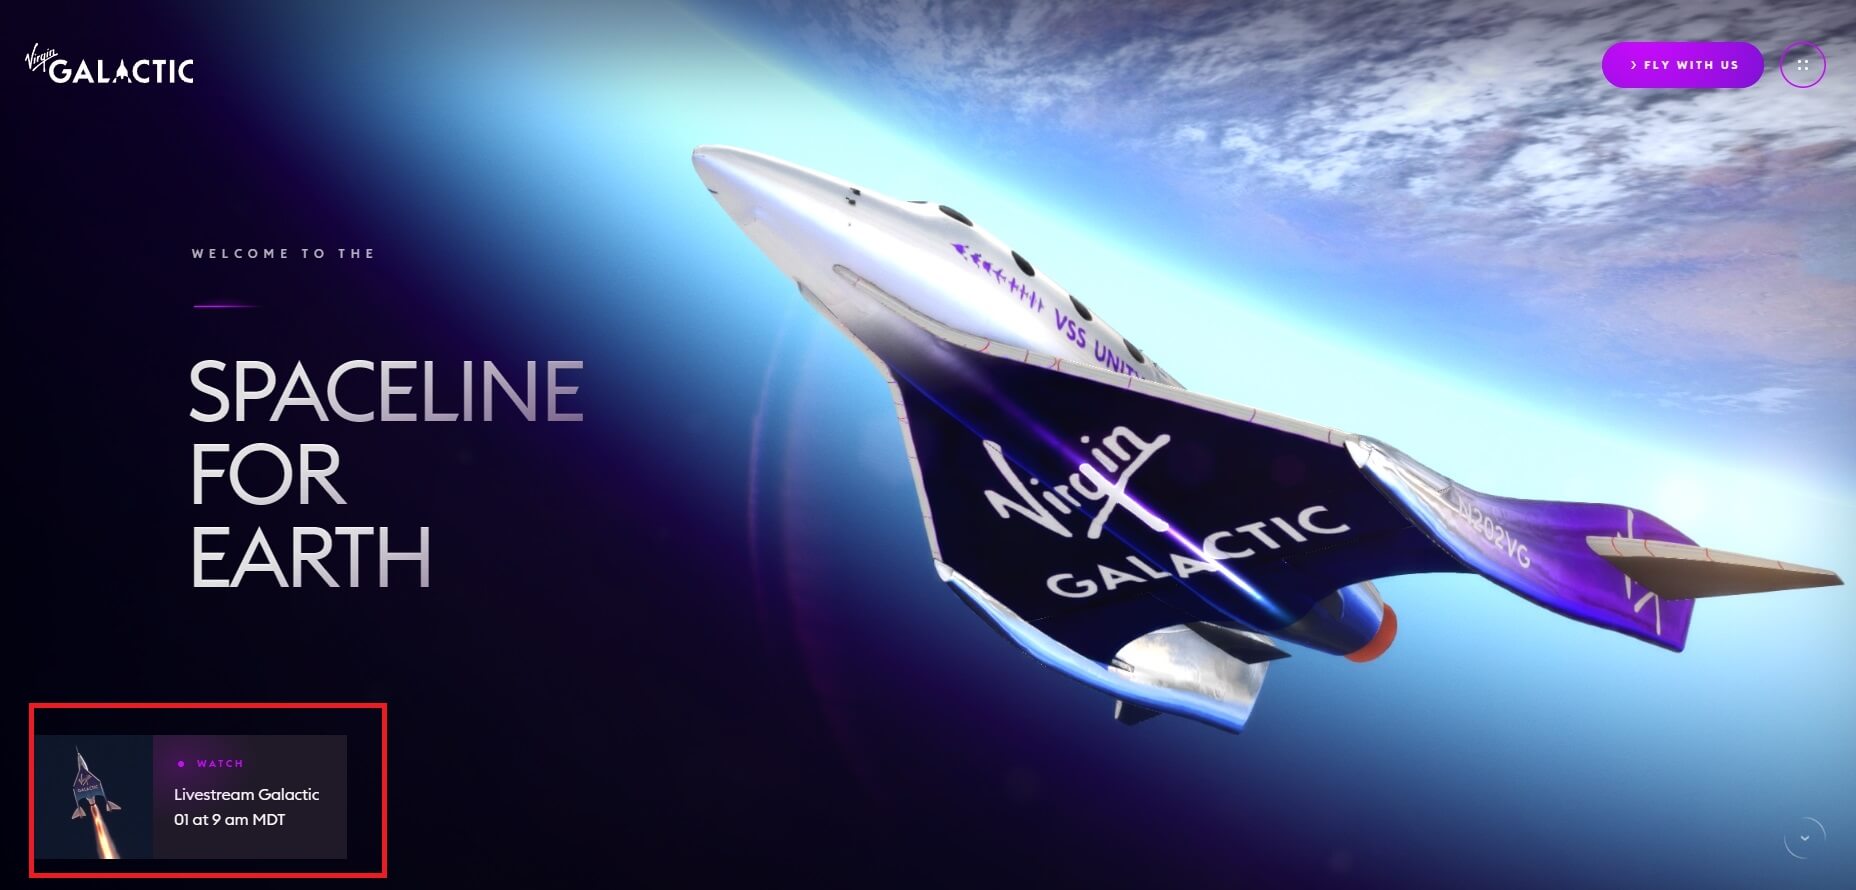 Первый коммерческий запуск Virgin Galactic 29 июня. Чтобы смотреть прямую трансляцию запуска Galactic 01 зайдите на официальный сайт Virgin Galactic и нажмите на кнопку в левом нижнем углу. Фото.